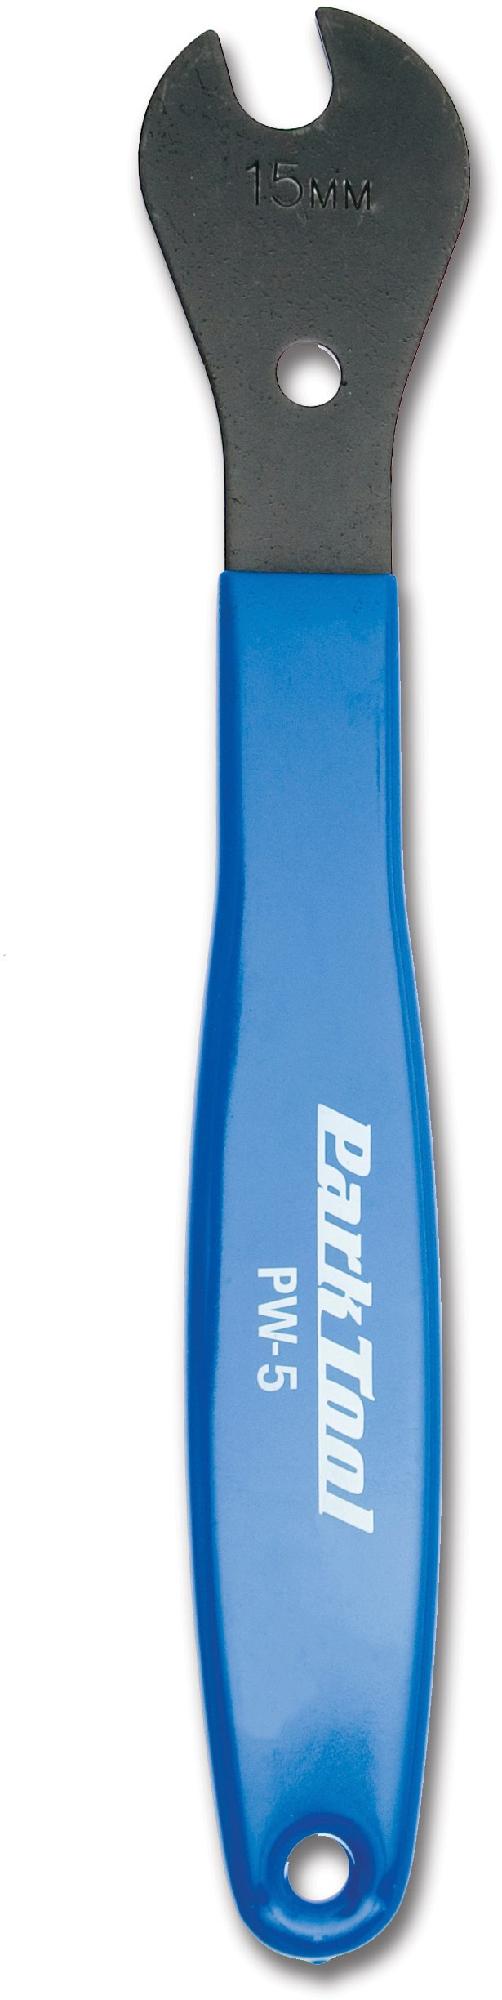 Педальный ключ для домашнего механика PW-5 Park Tool профессиональный набор инструментов пк 5 park tool цвет one color